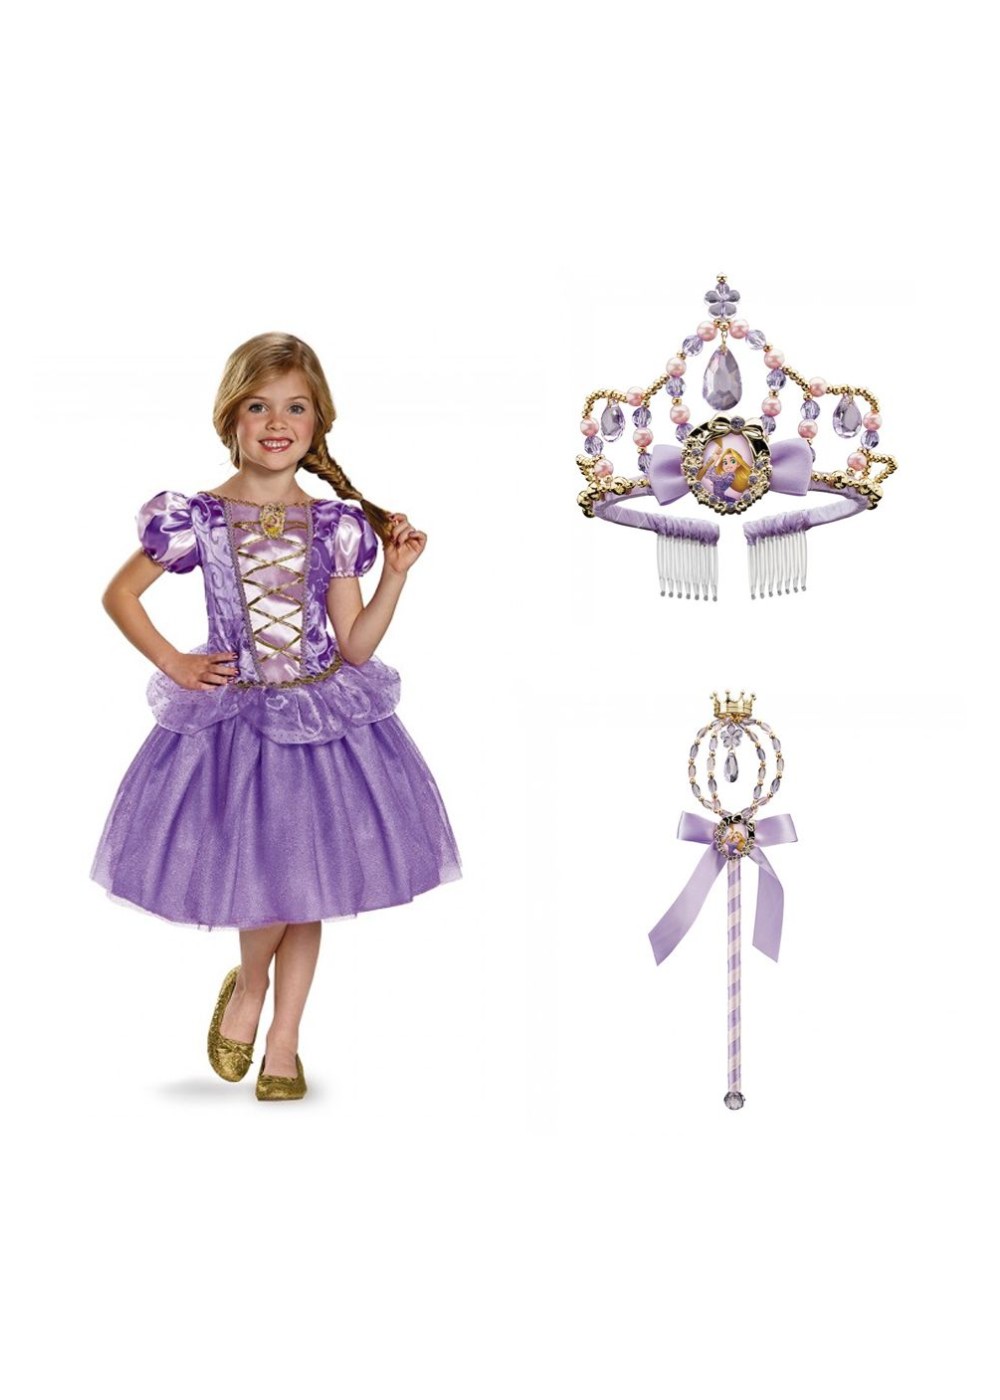 Disney Princess Rapunzel Costume Wand And Tiara Girls Set